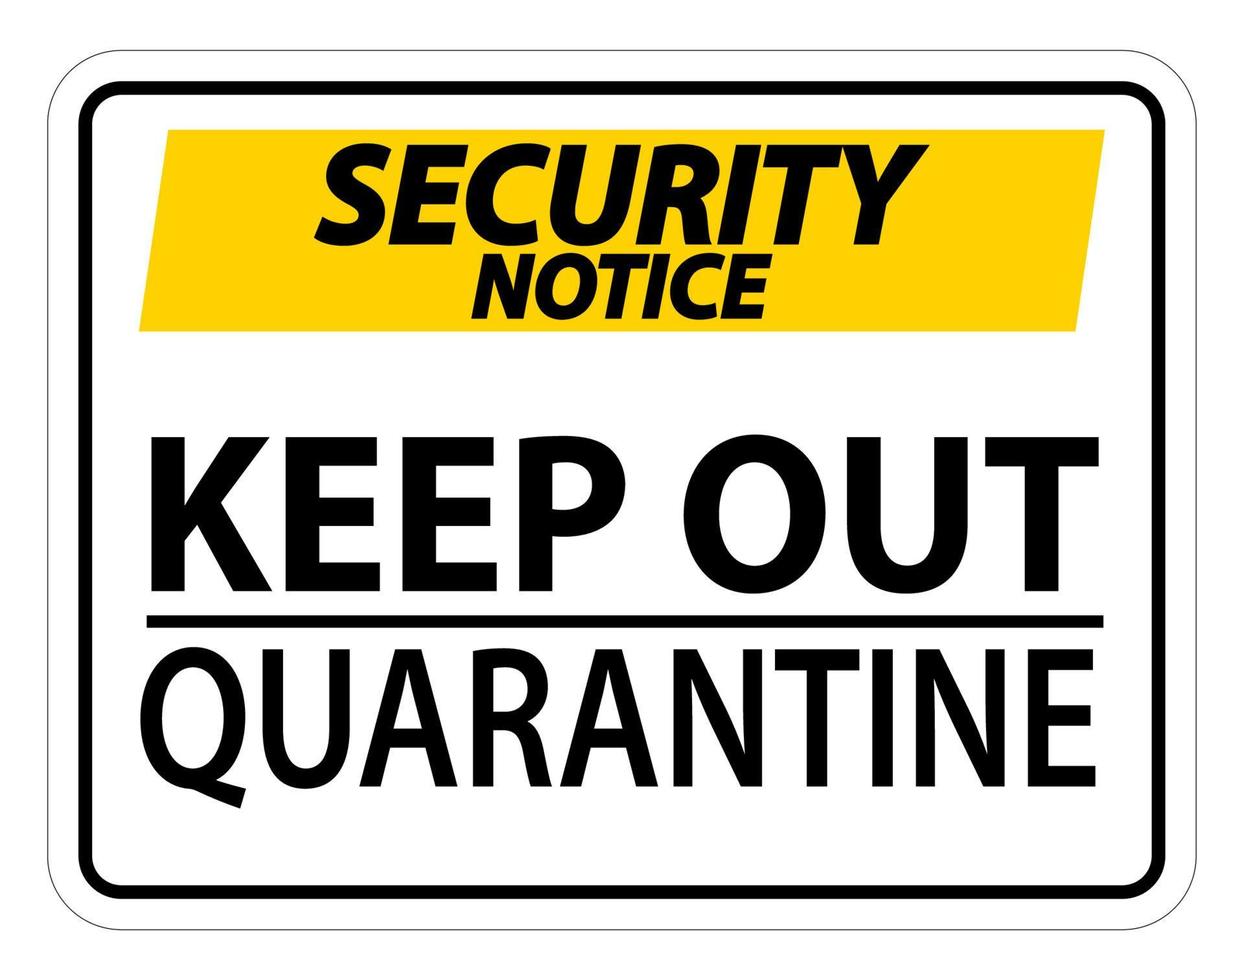 veiligheidsmededeling houd quarantaine teken geïsoleerd op een witte achtergrond, vector illustratie eps.10